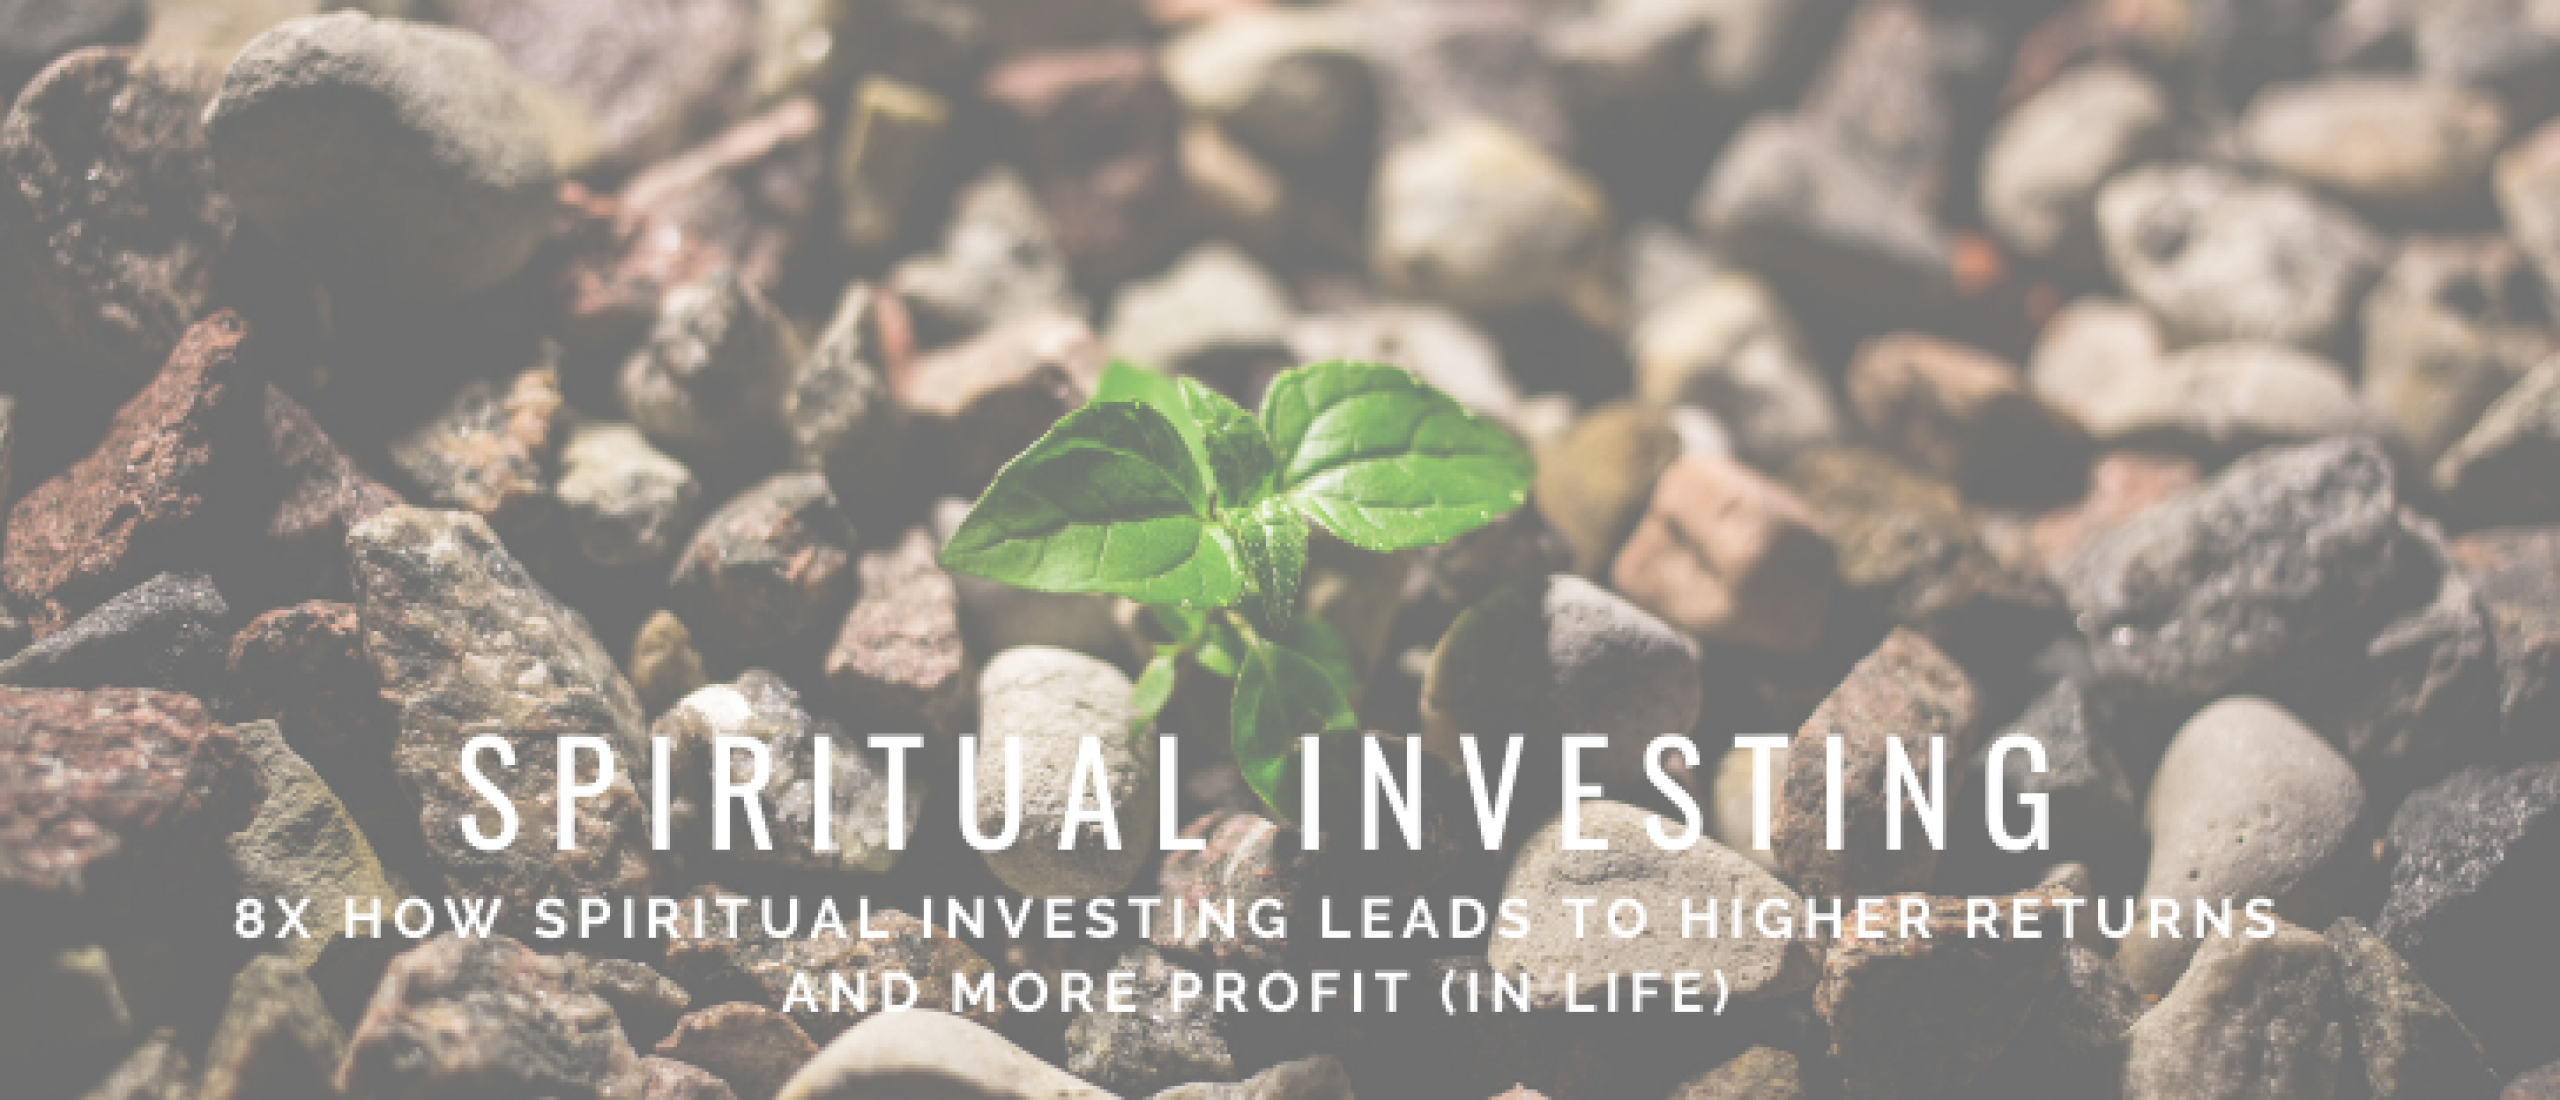 Spiritual investing: How to become a spiritual investor